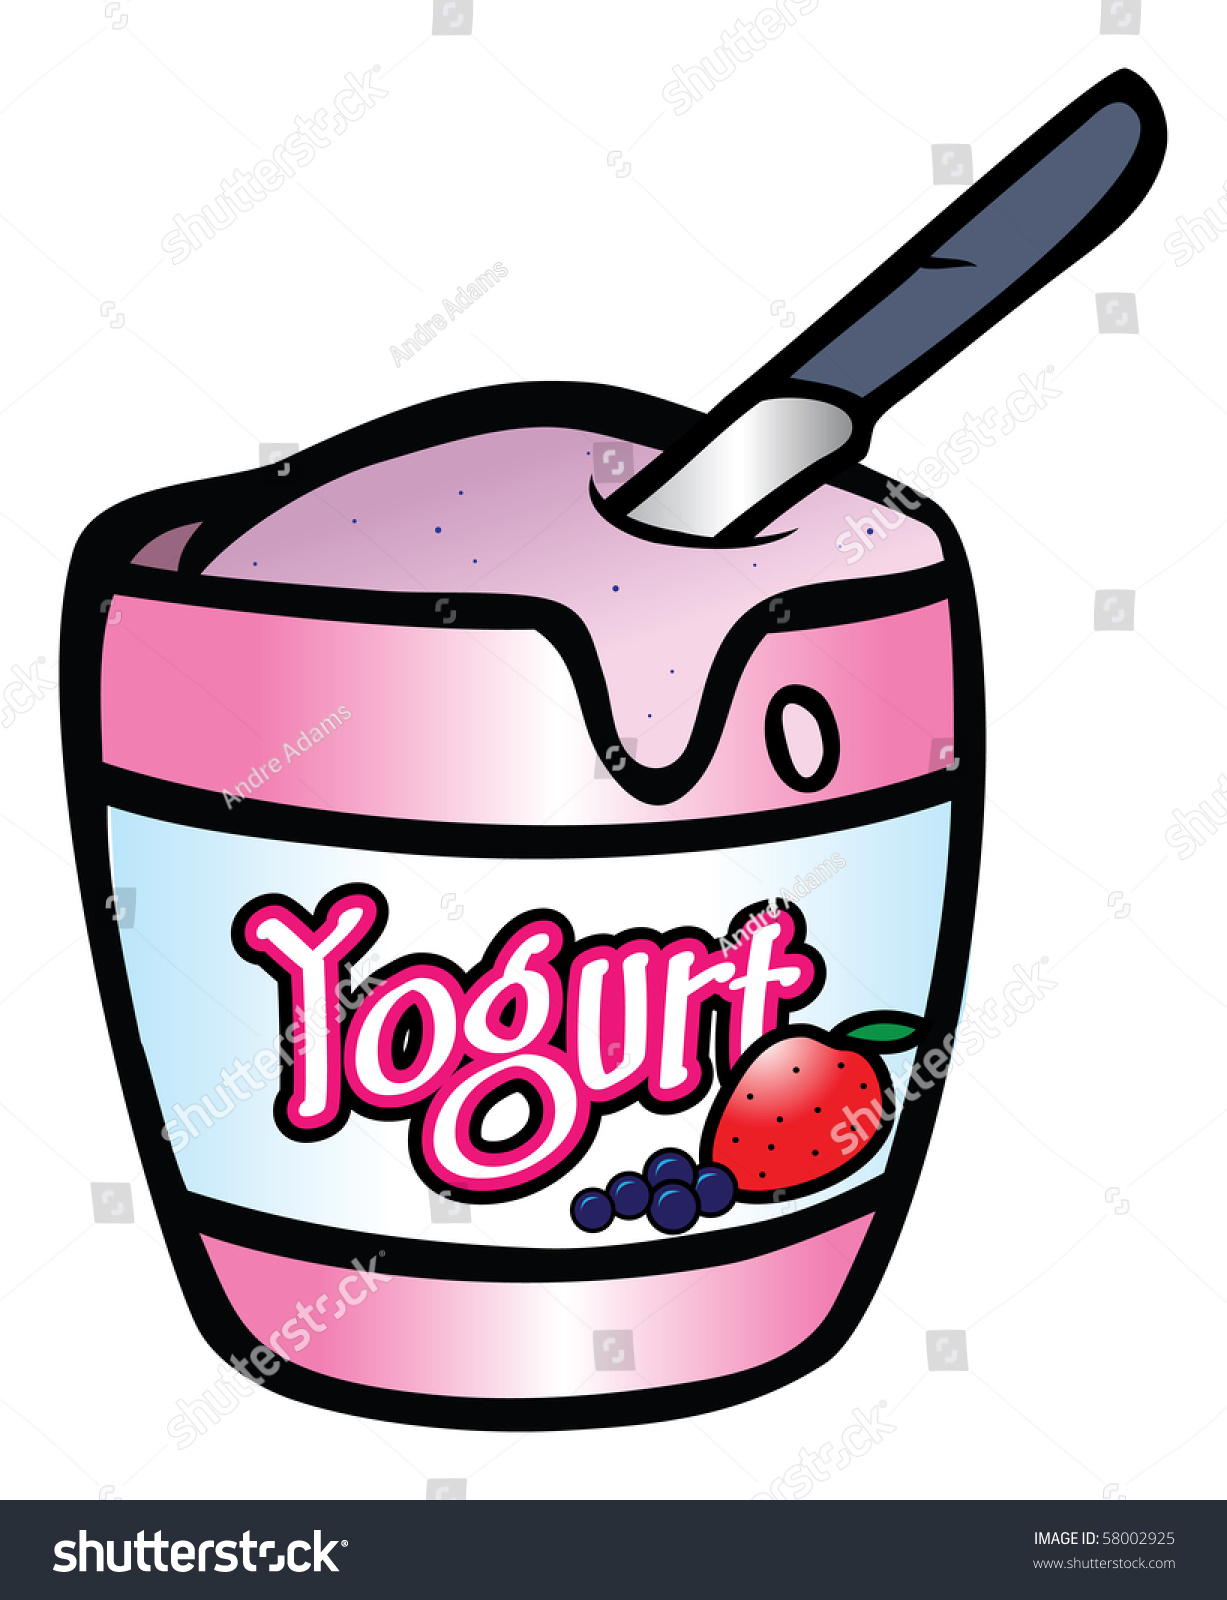 clipart gratuit yaourt - photo #38